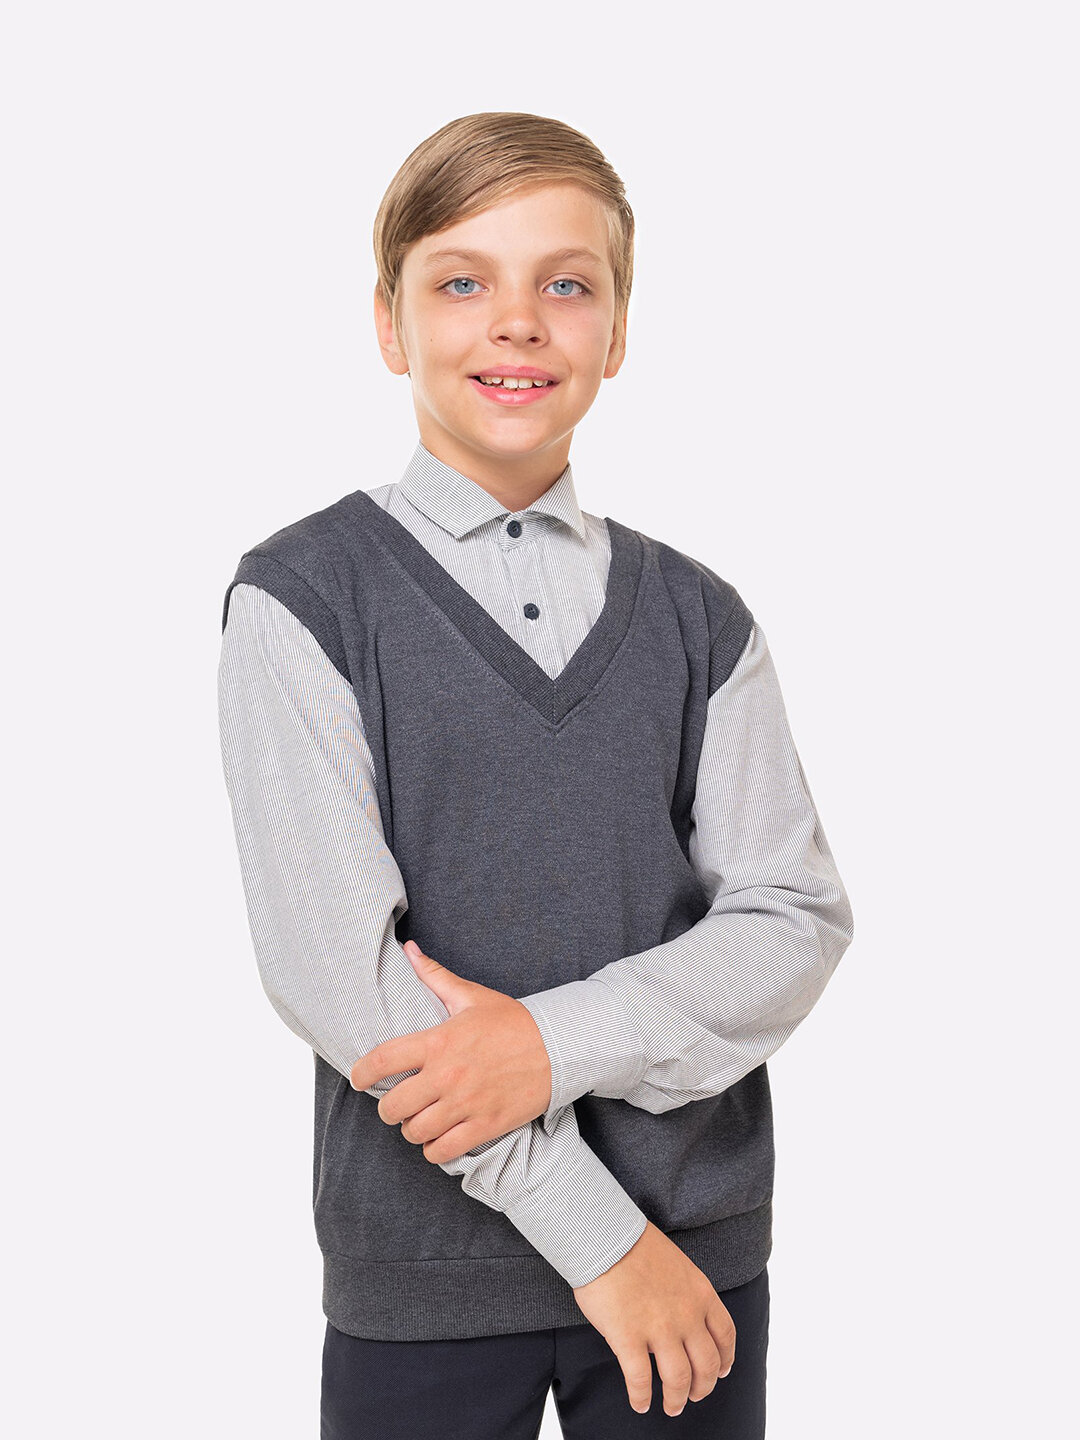 Рубашка обманка с жилеткой школьная для мальчика подростка HappyFox HF1011MBL размер 128 цвет т. серый